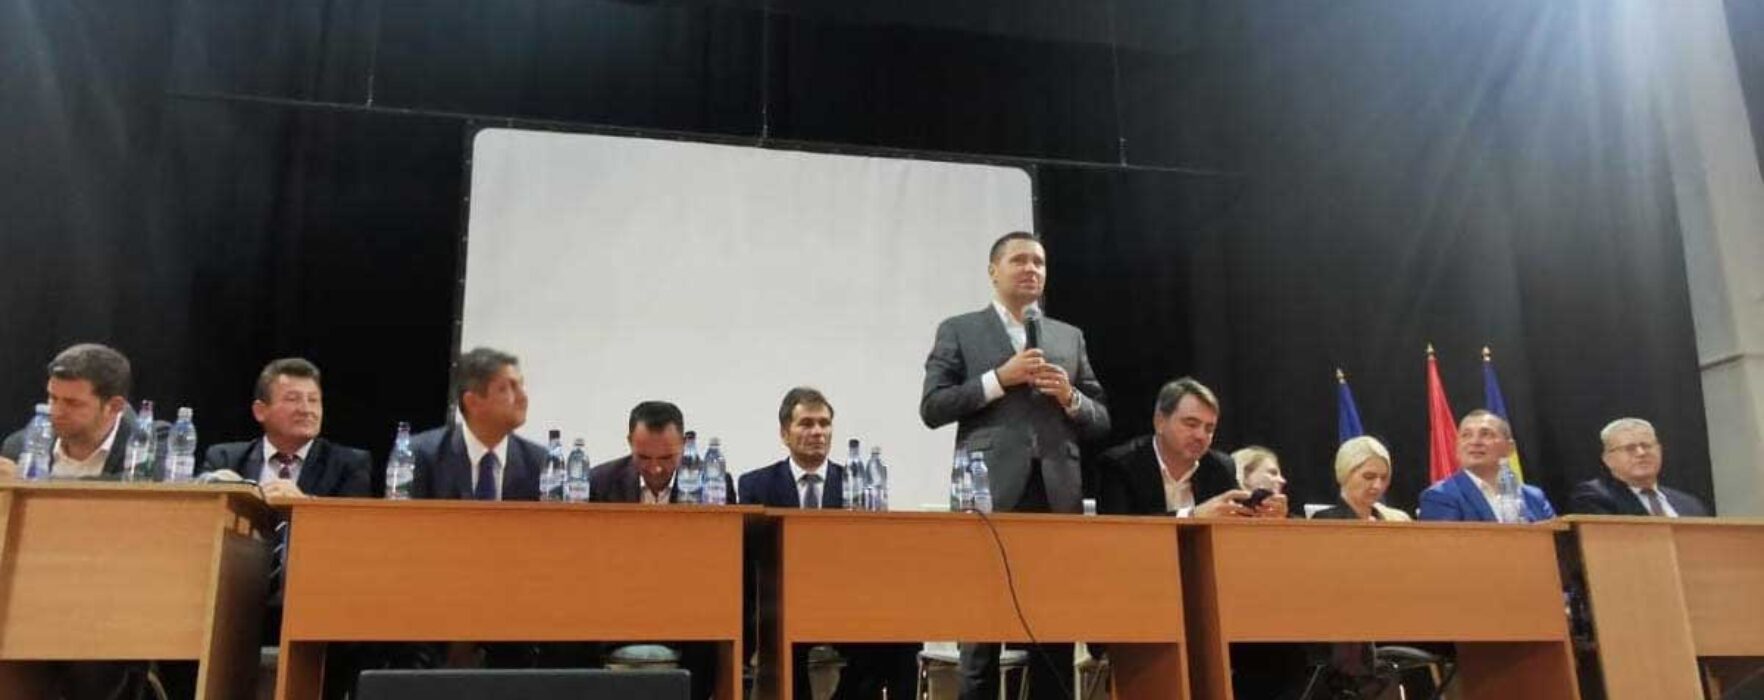 PSD Dâmboviţa: Alegeri interne în Moroeni, Fieni şi Runcu